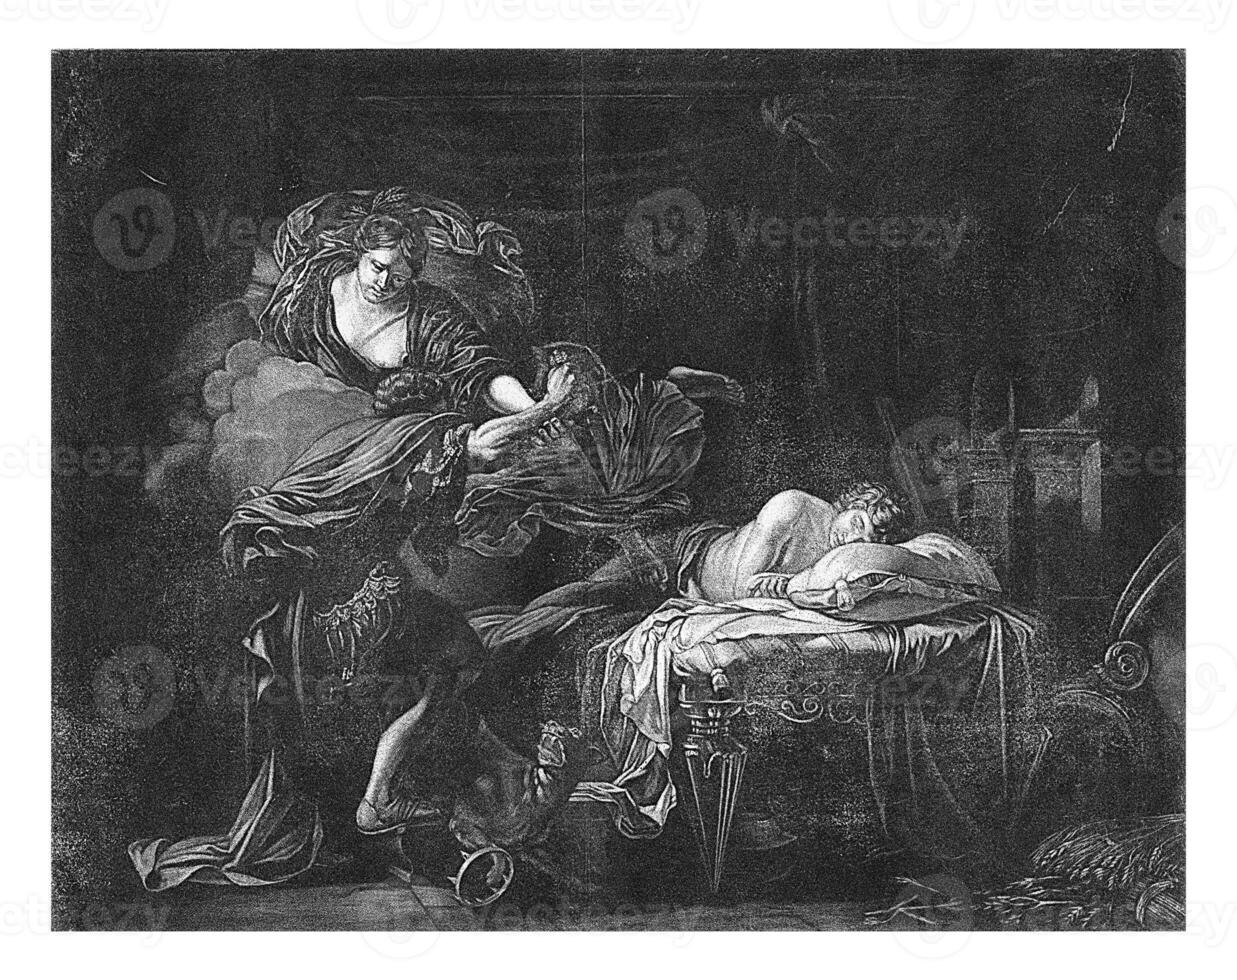 Ceres voltas lince para dentro uma lince, Jacob cara, depois de gerard de lairesse, 1670 - 1724 foto